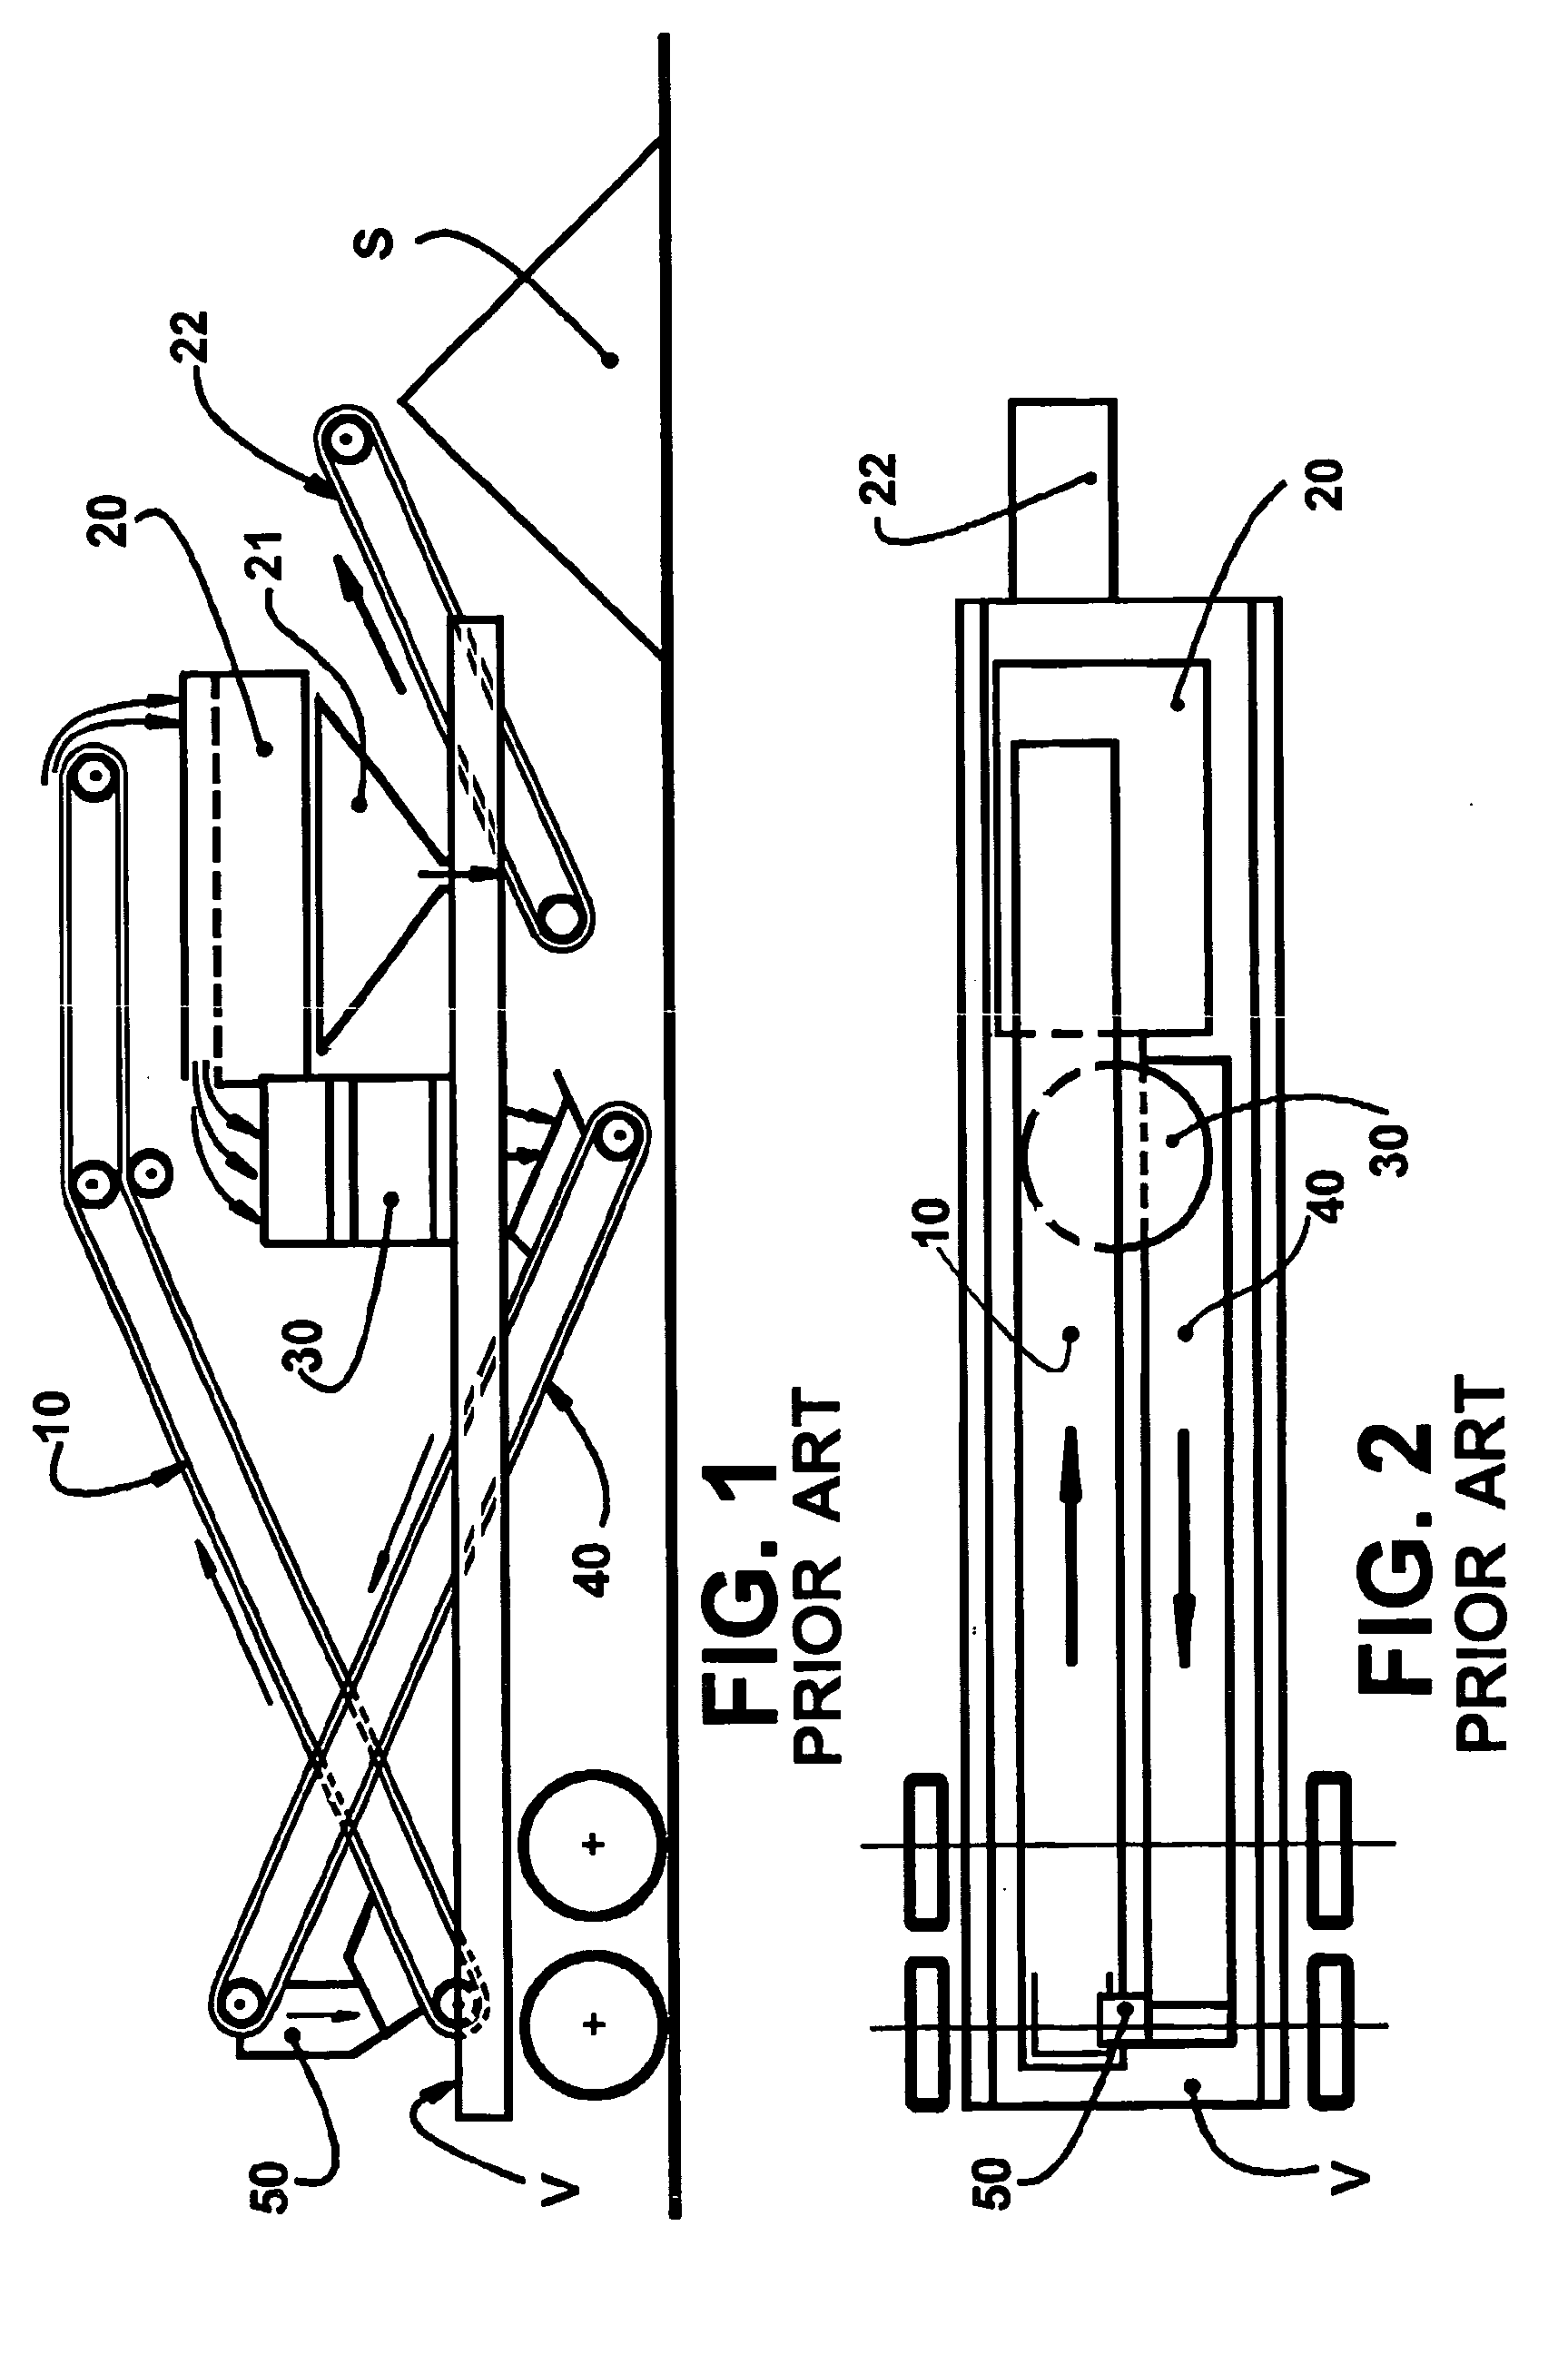 Belt conveyor and crushing unit